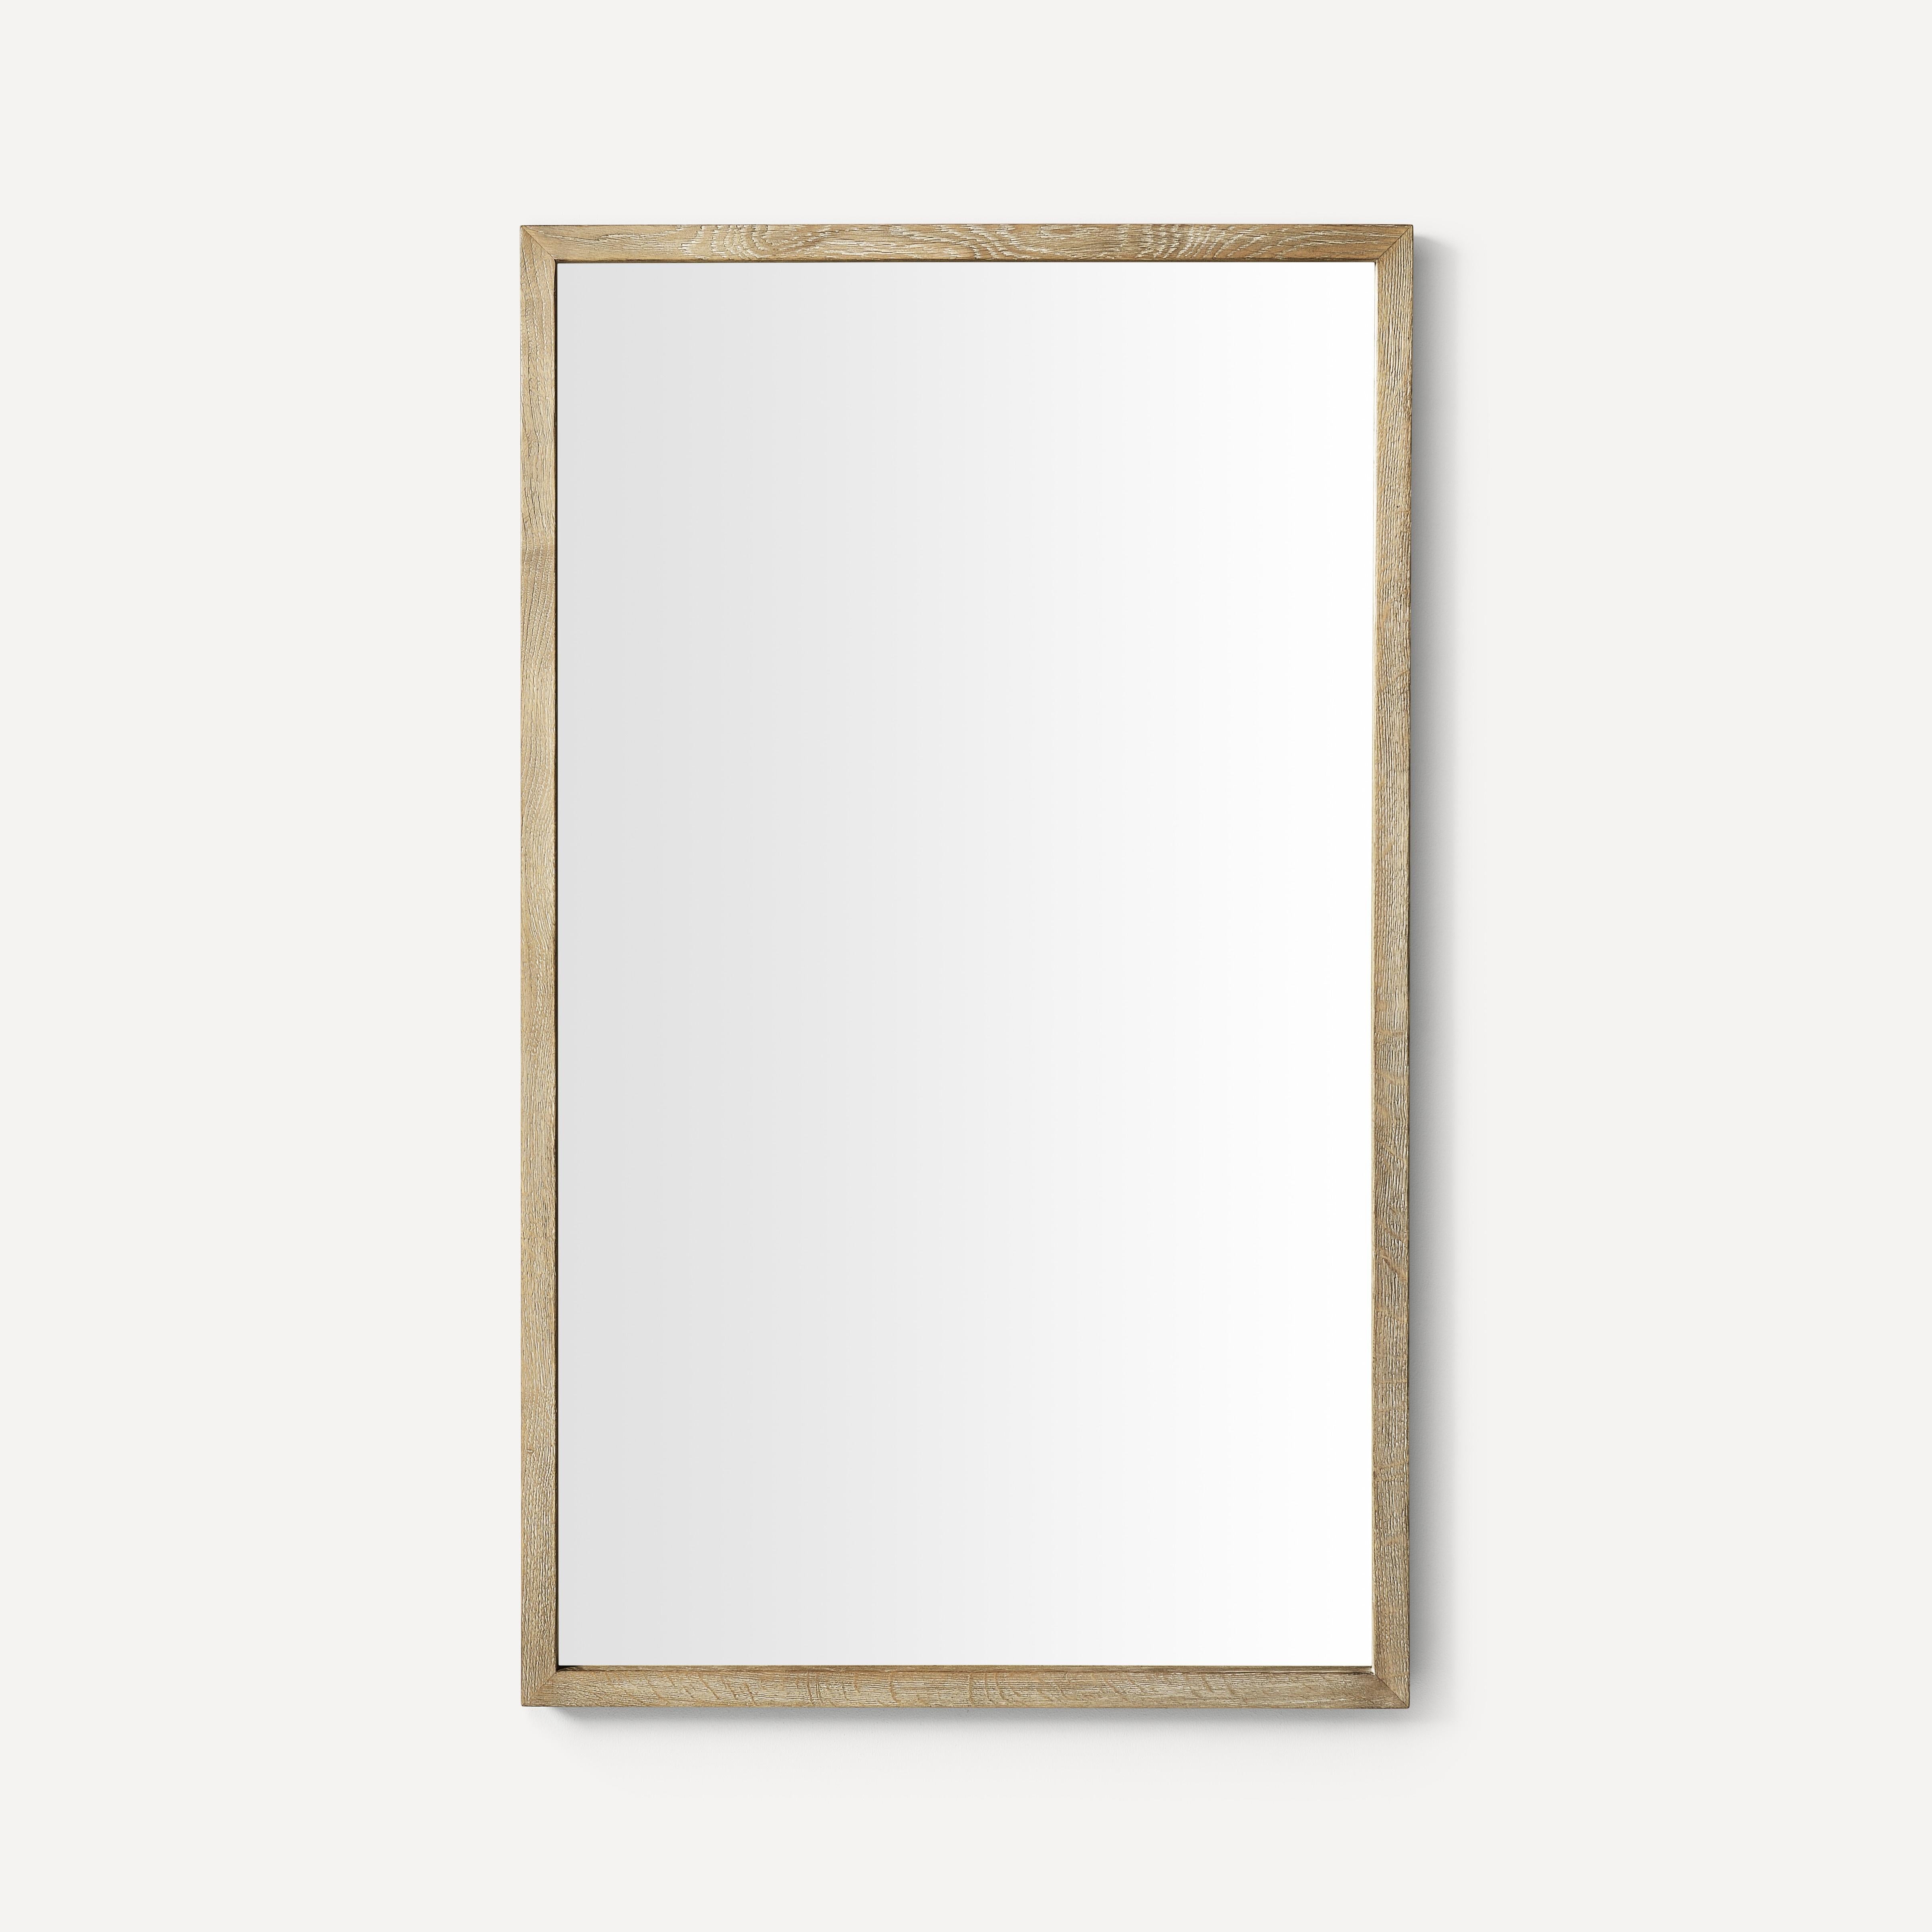 Robern Thin Framed Wood Mirror, 24"x 40"x 1-1/2"